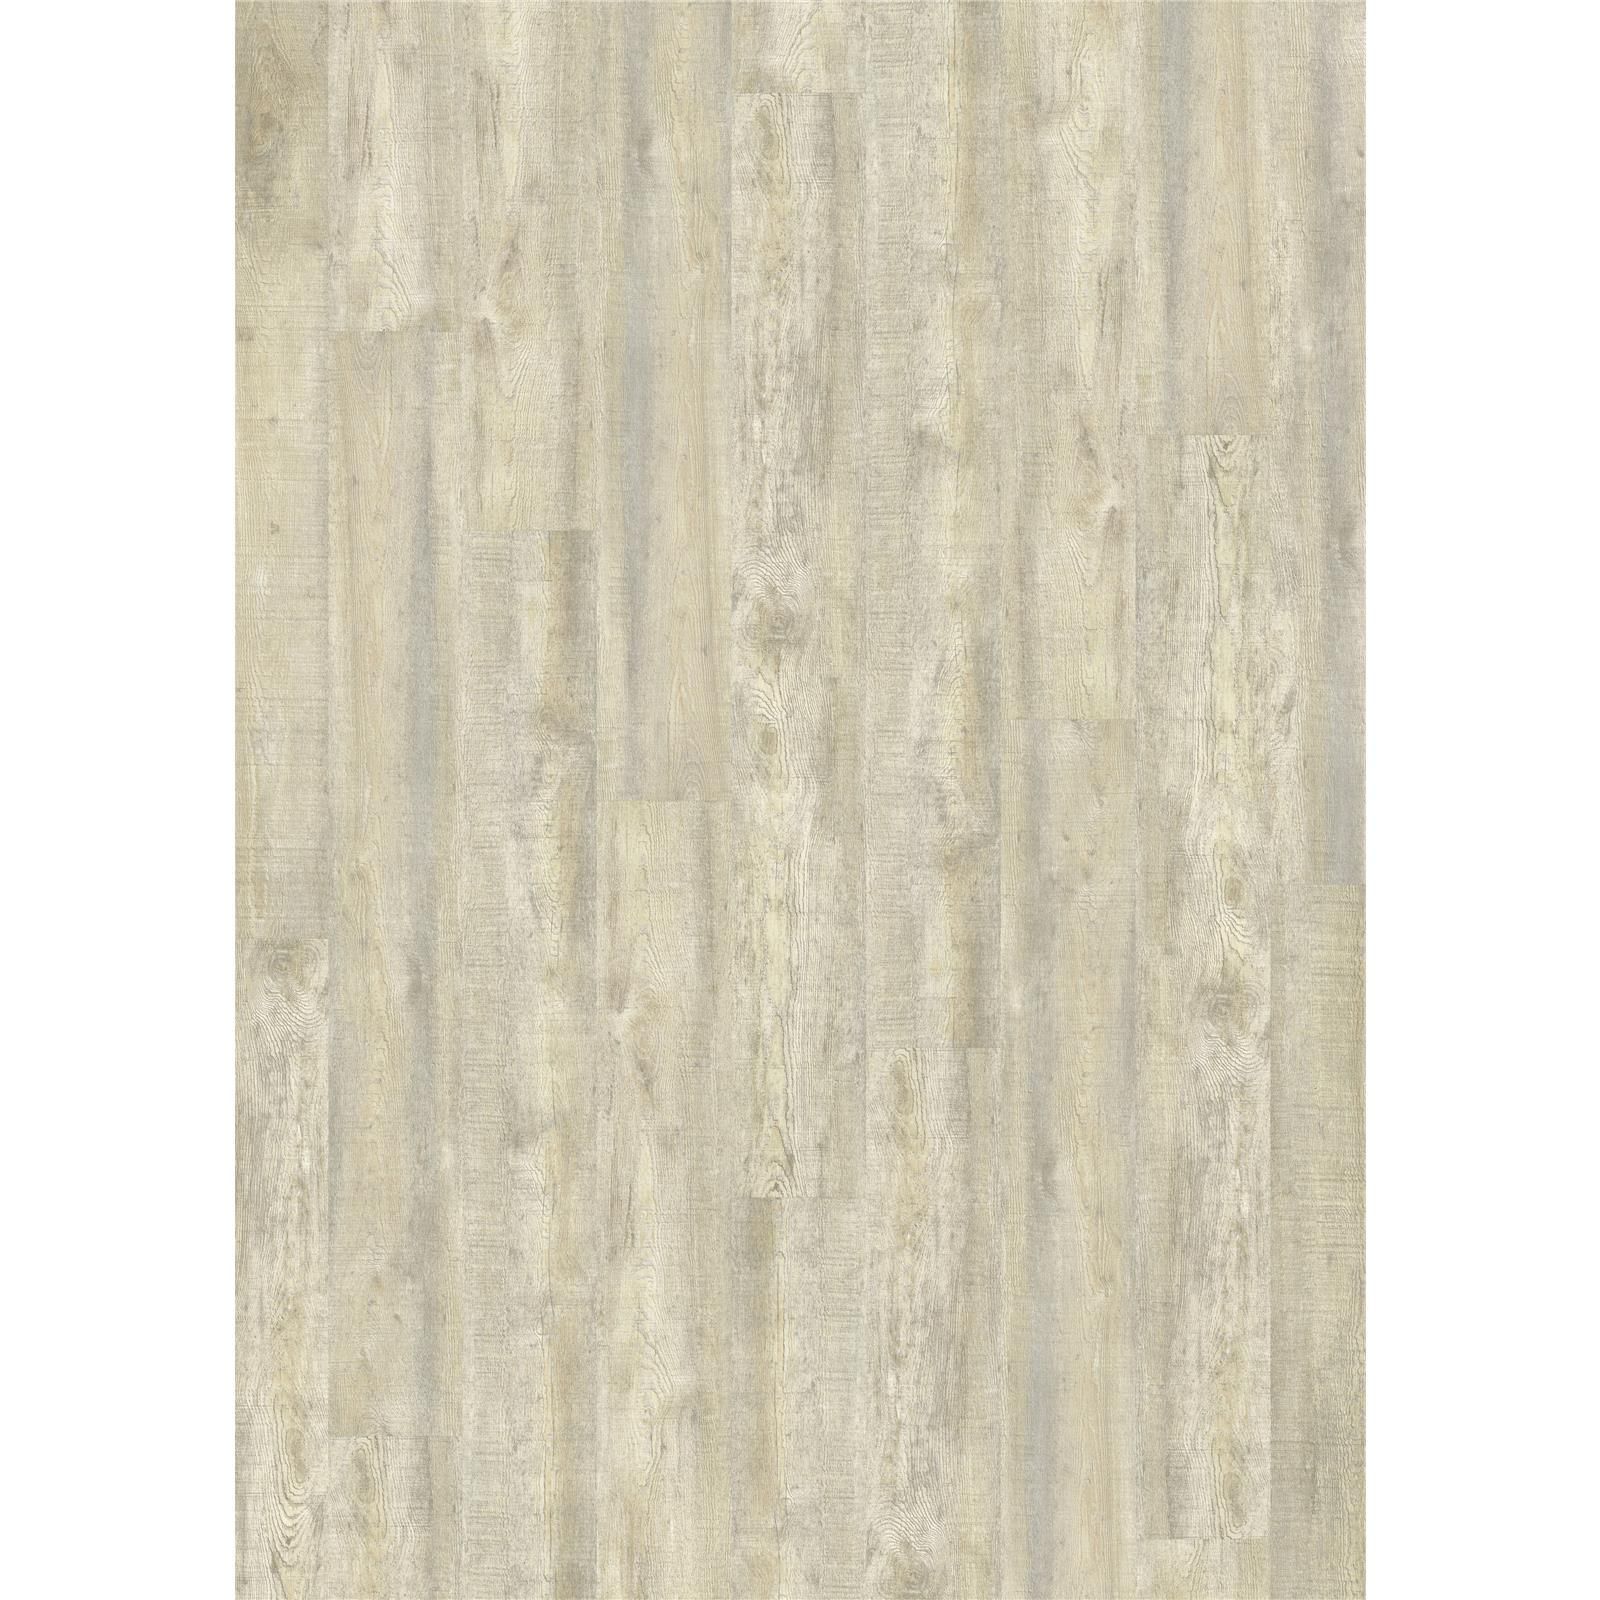 Designboden Dryback 2835 White Limed Oak - Planke 15,24 cm x 121,92 cm - Nutzschichtdicke 0,4 mm